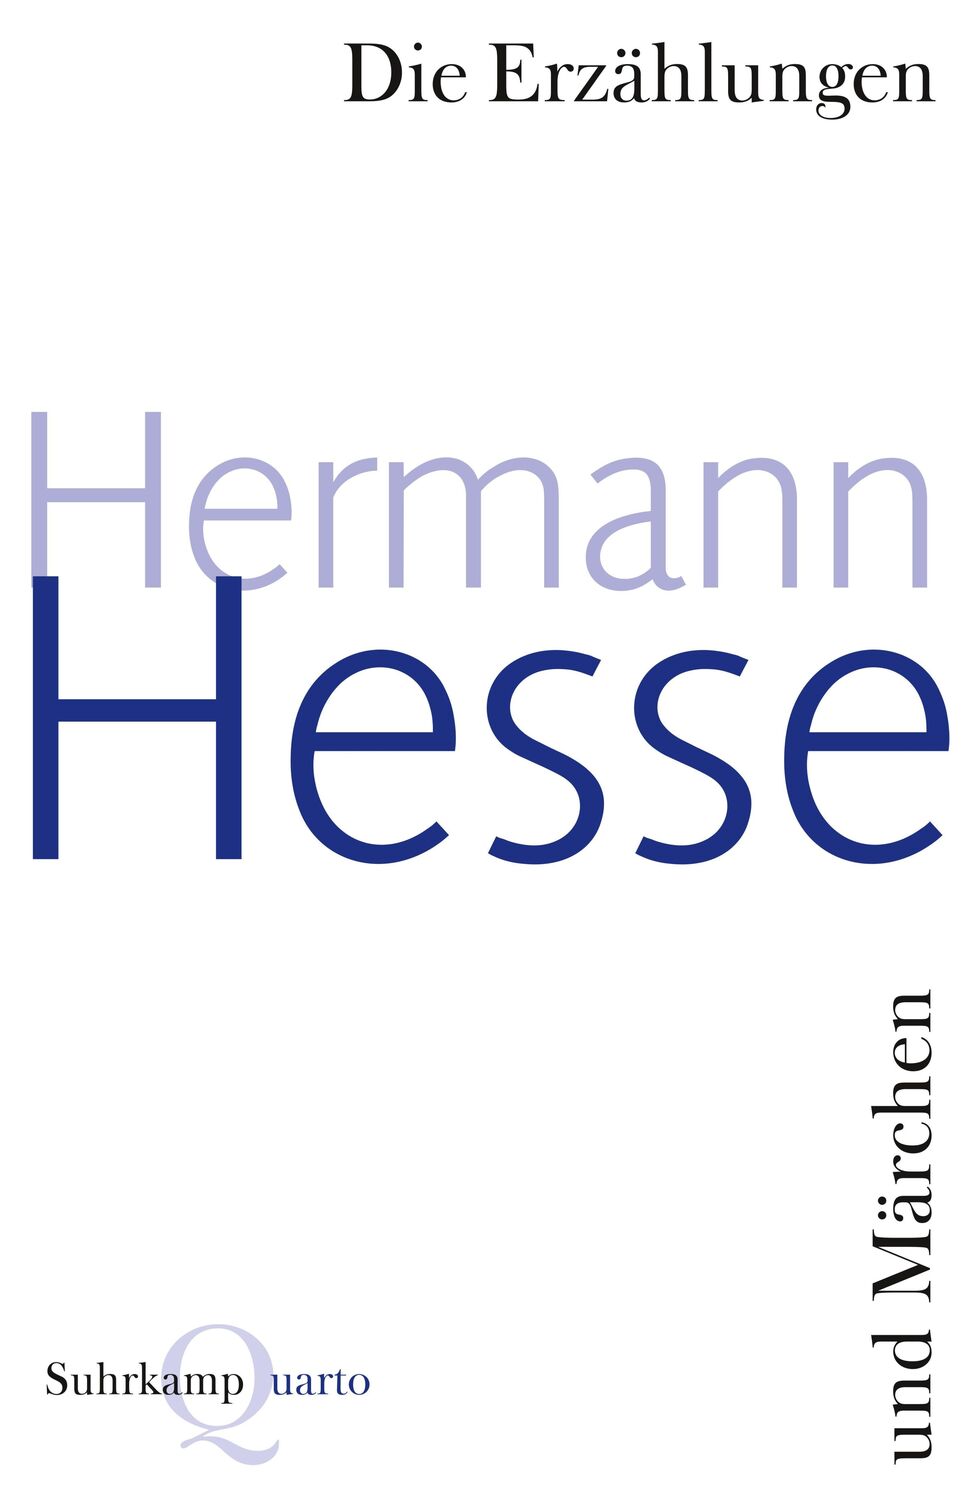 Die Erzählungen und Märchen - Hesse, Hermann